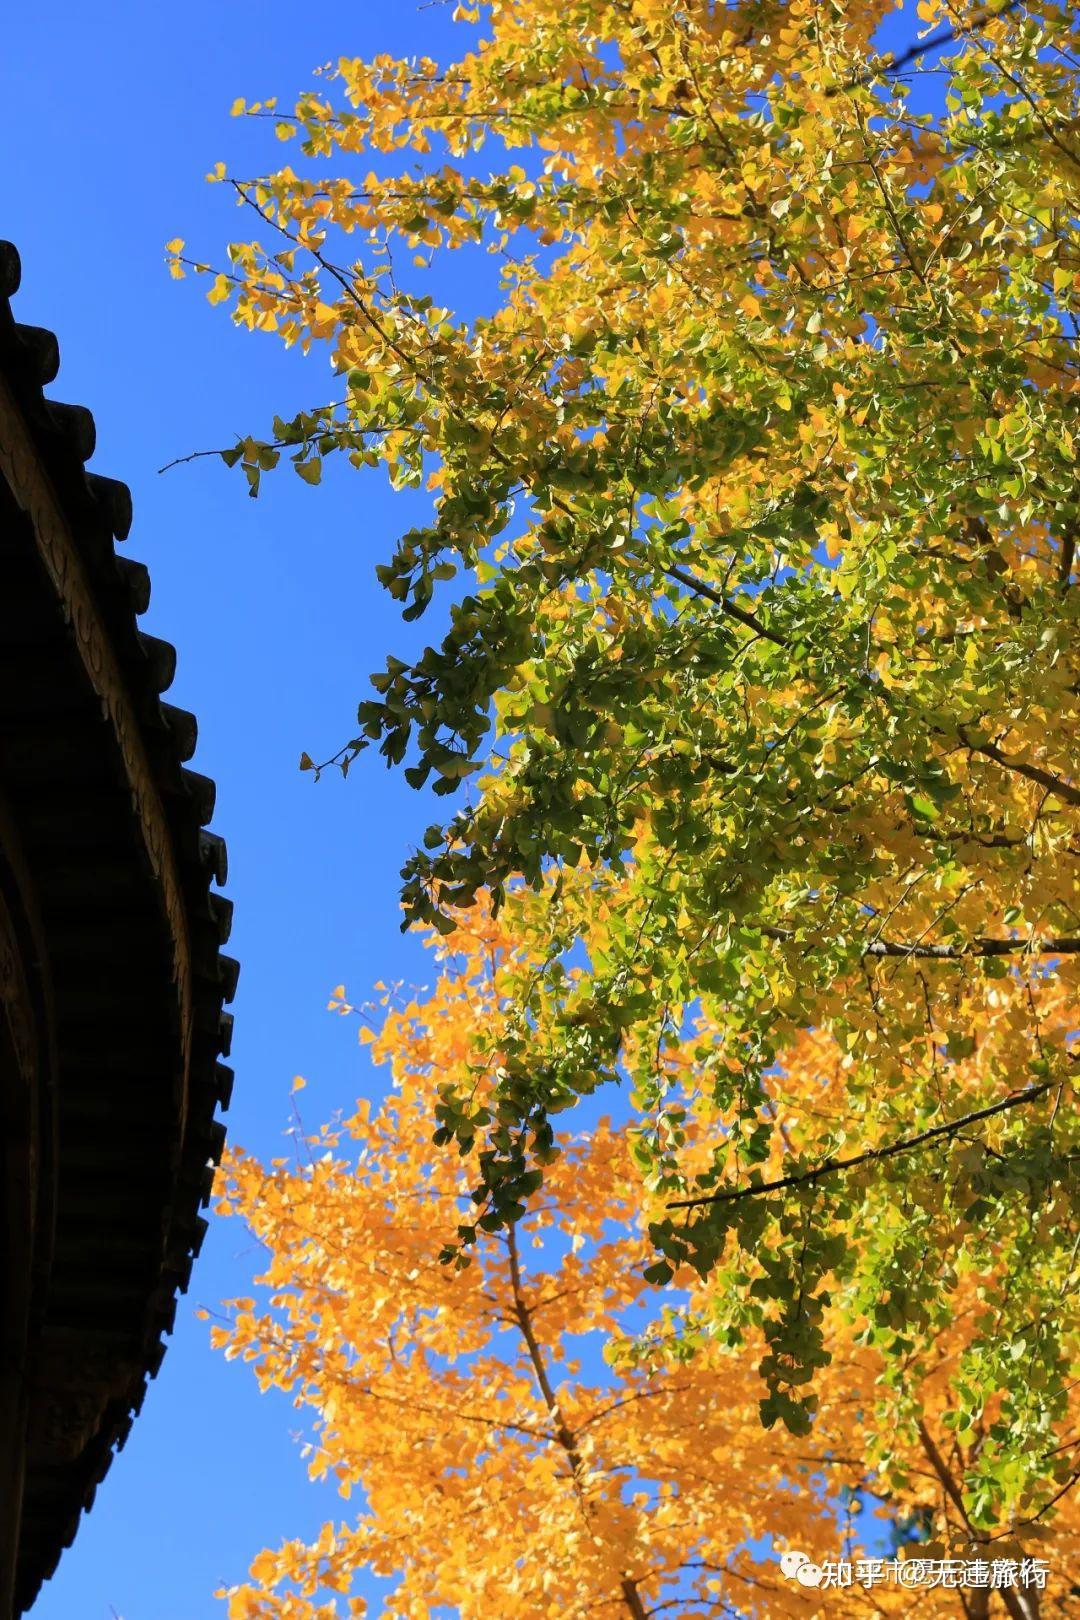 四川大学望江校区，你知多少？著名校门、经典建筑、荷花、银杏？